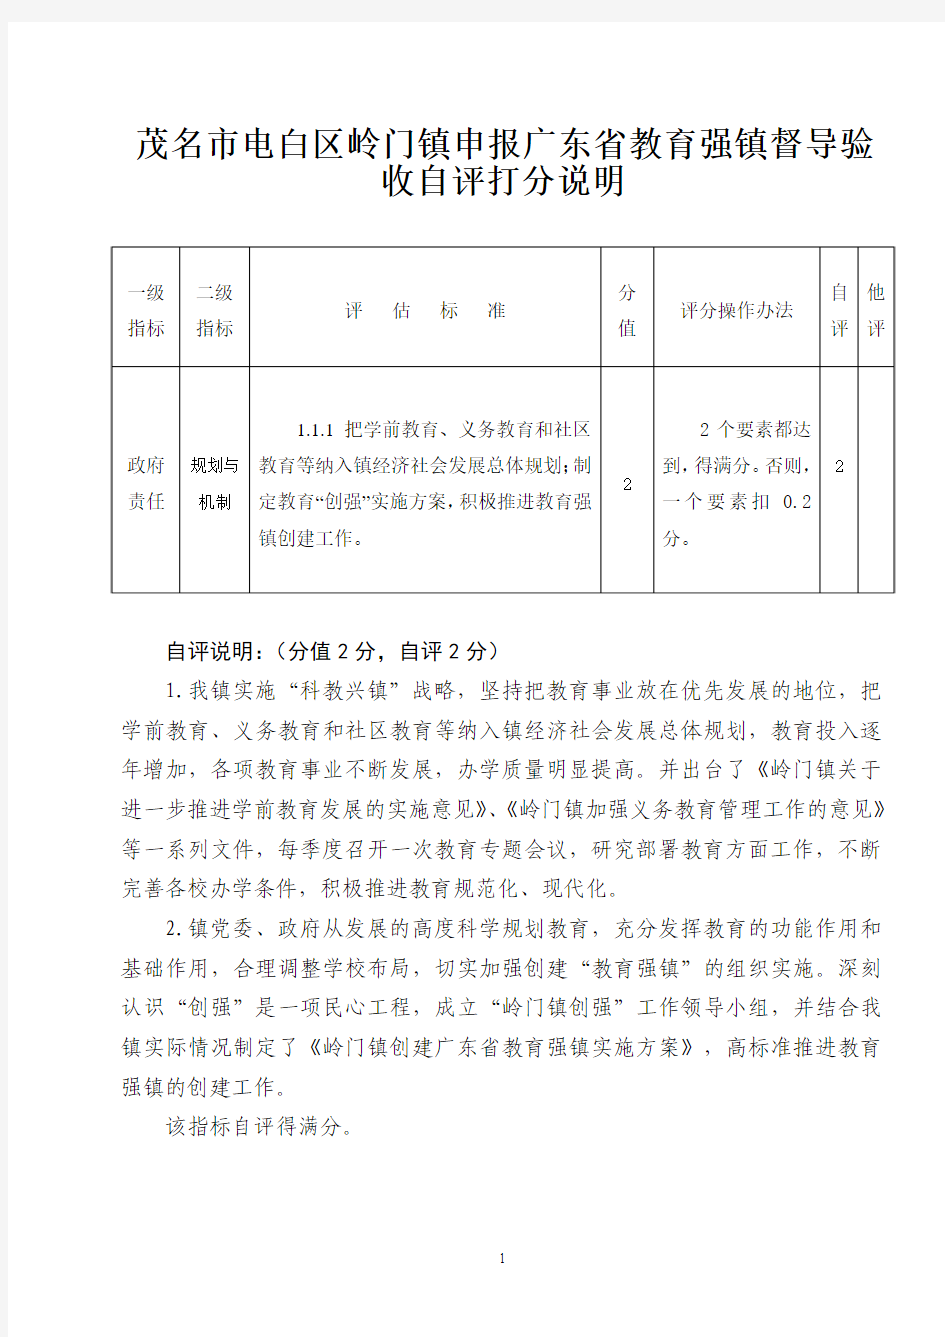 那霍自评分一览表 - 广东省教育厅